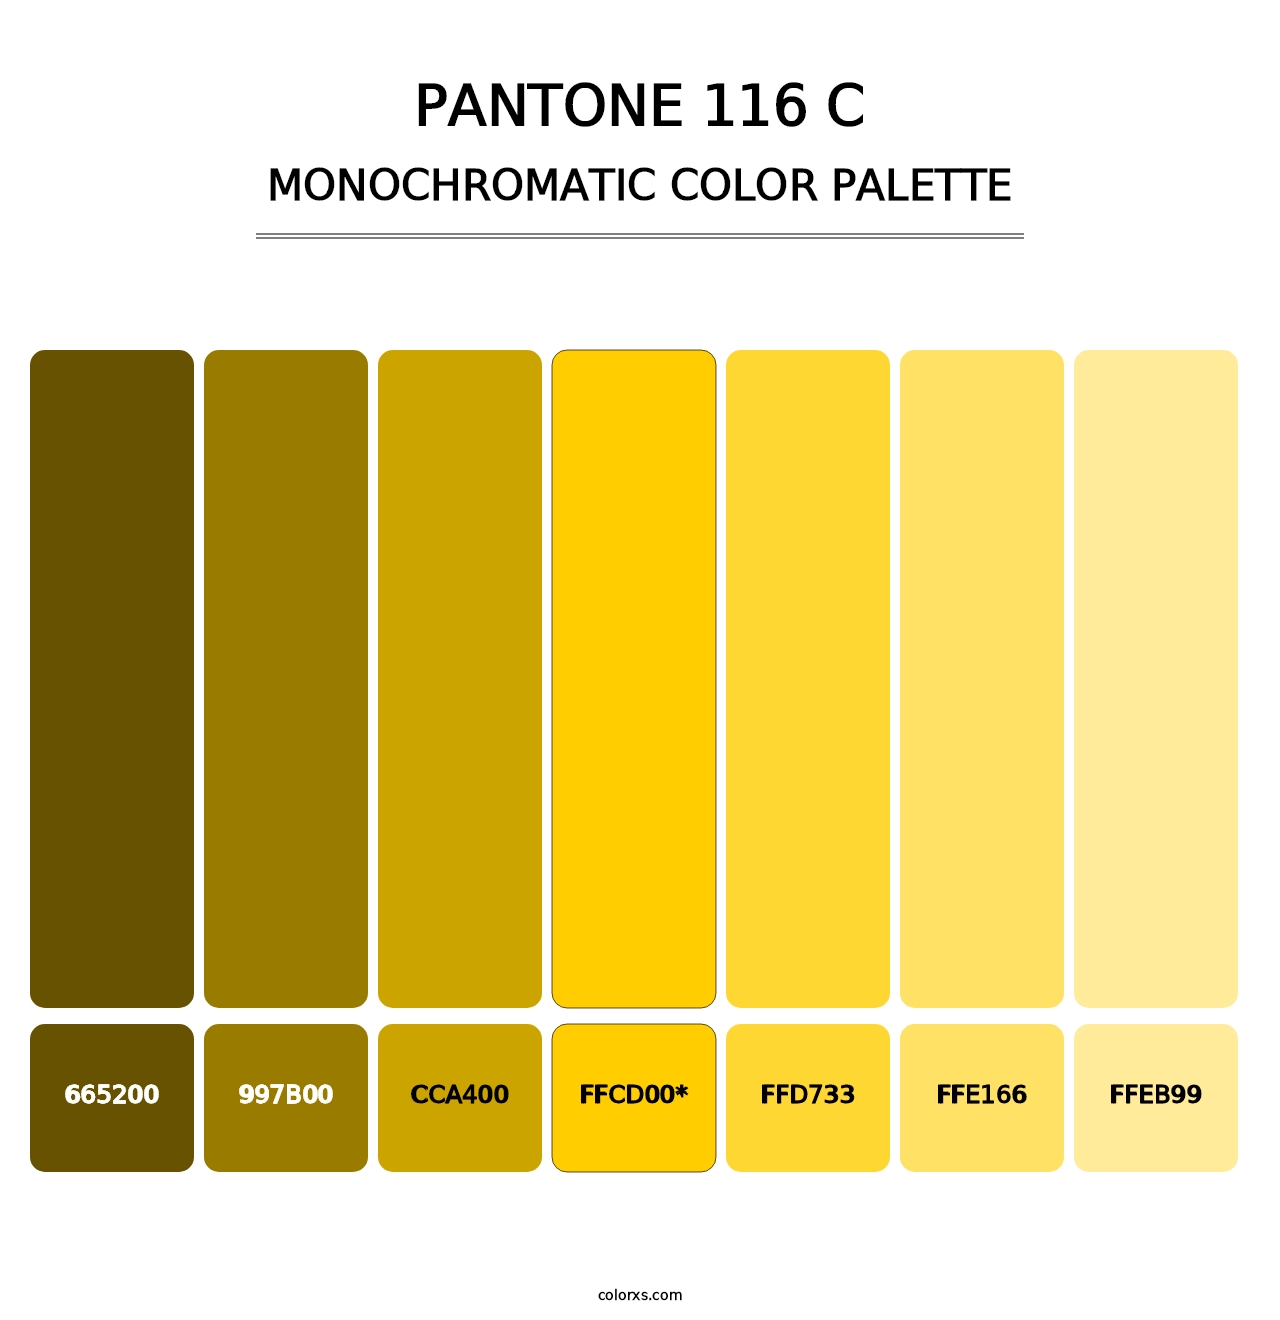 PANTONE 116 C - Monochromatic Color Palette